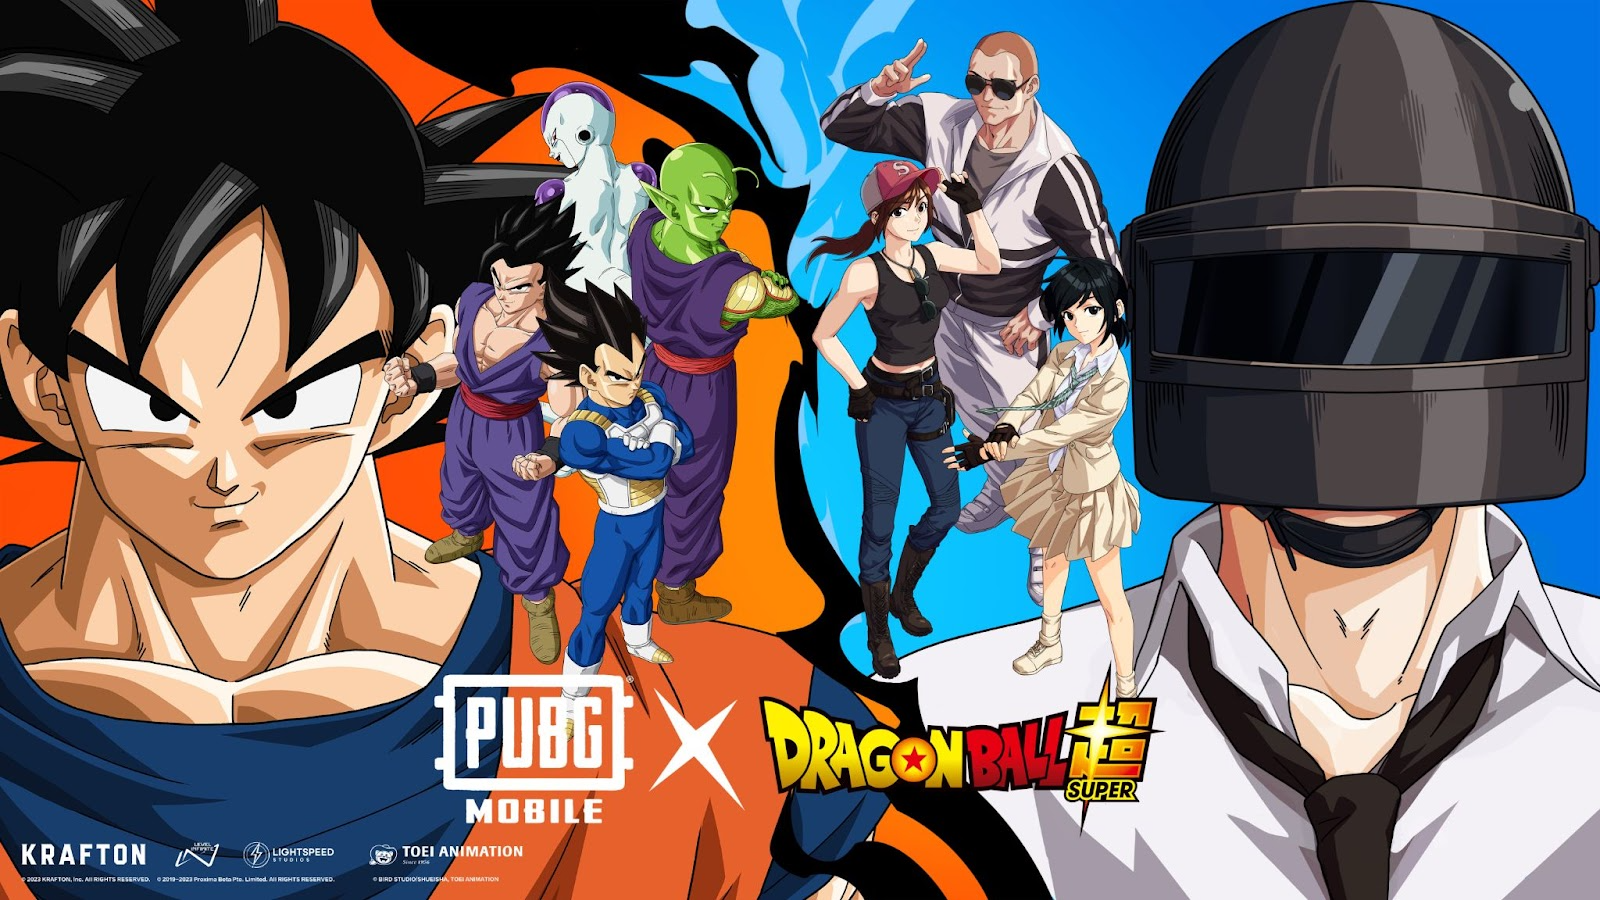 Dragon Ball Super PUBG Mobile